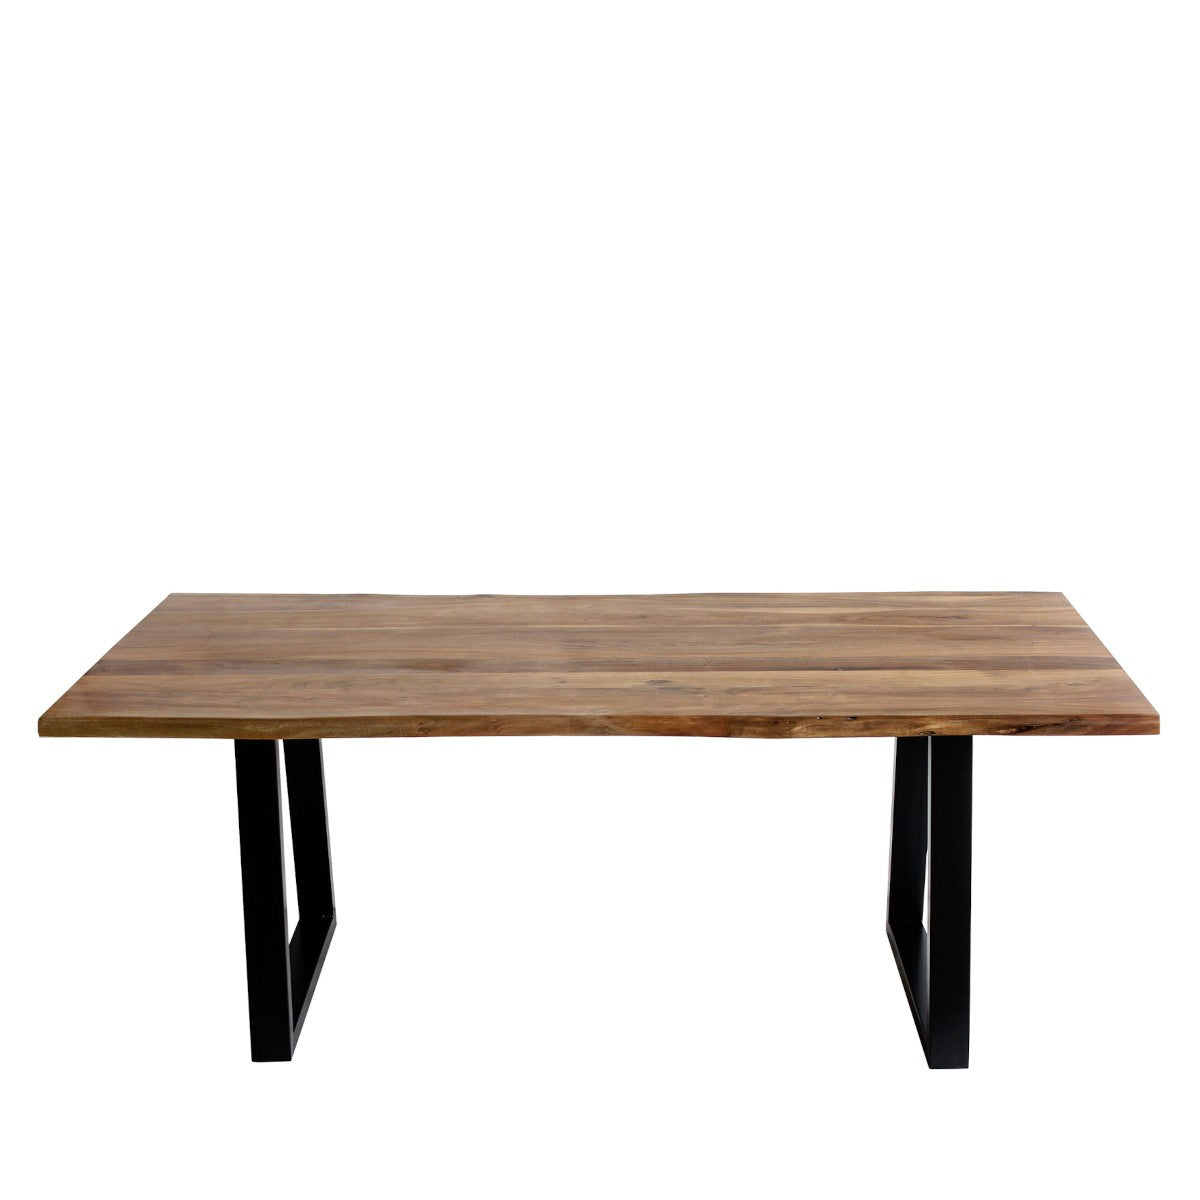 BORACHIO/table